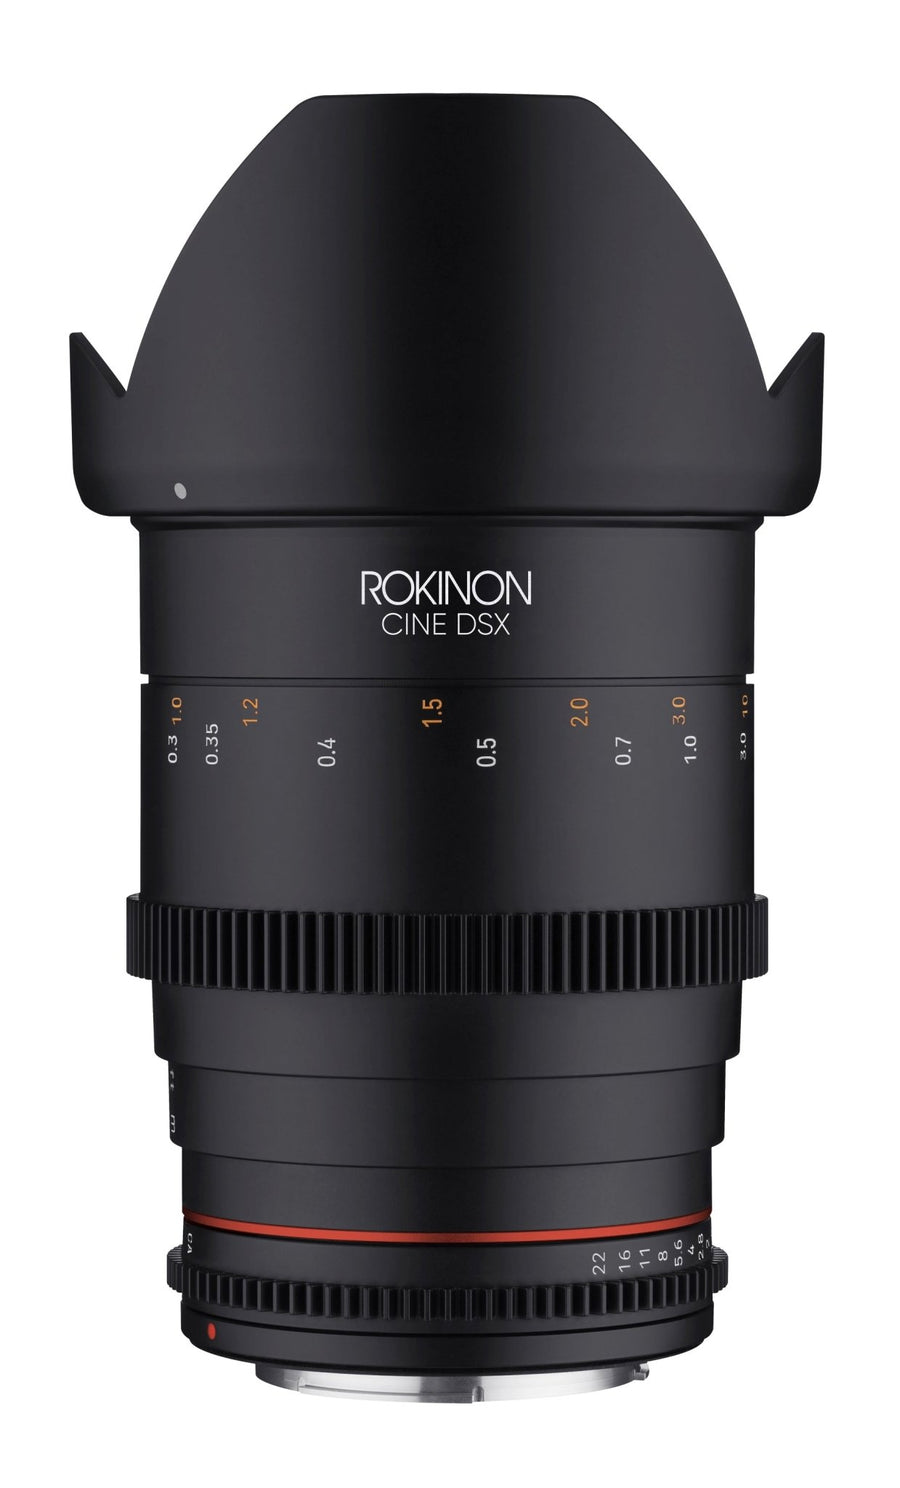 24, 35, 50, 85mm T1.5 Cine DSX Lens Bundle - Rokinon